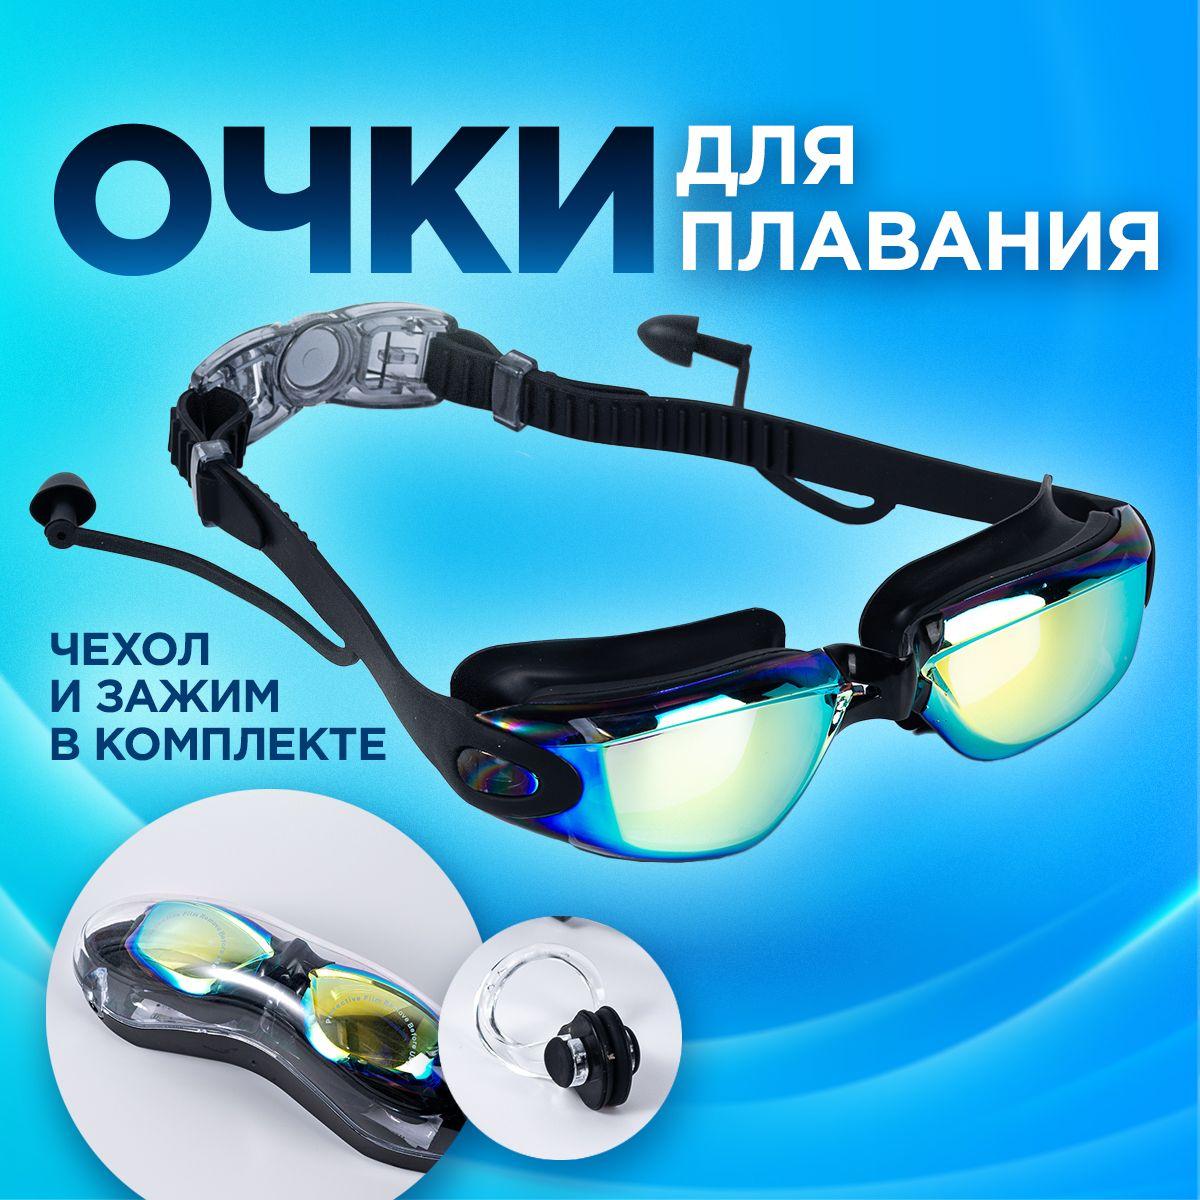 Очки для плавания детские, взрослые. Плавательные очки с берушами женские, мужские, цвет черный, чехол для хранения и зажим в комплекте.